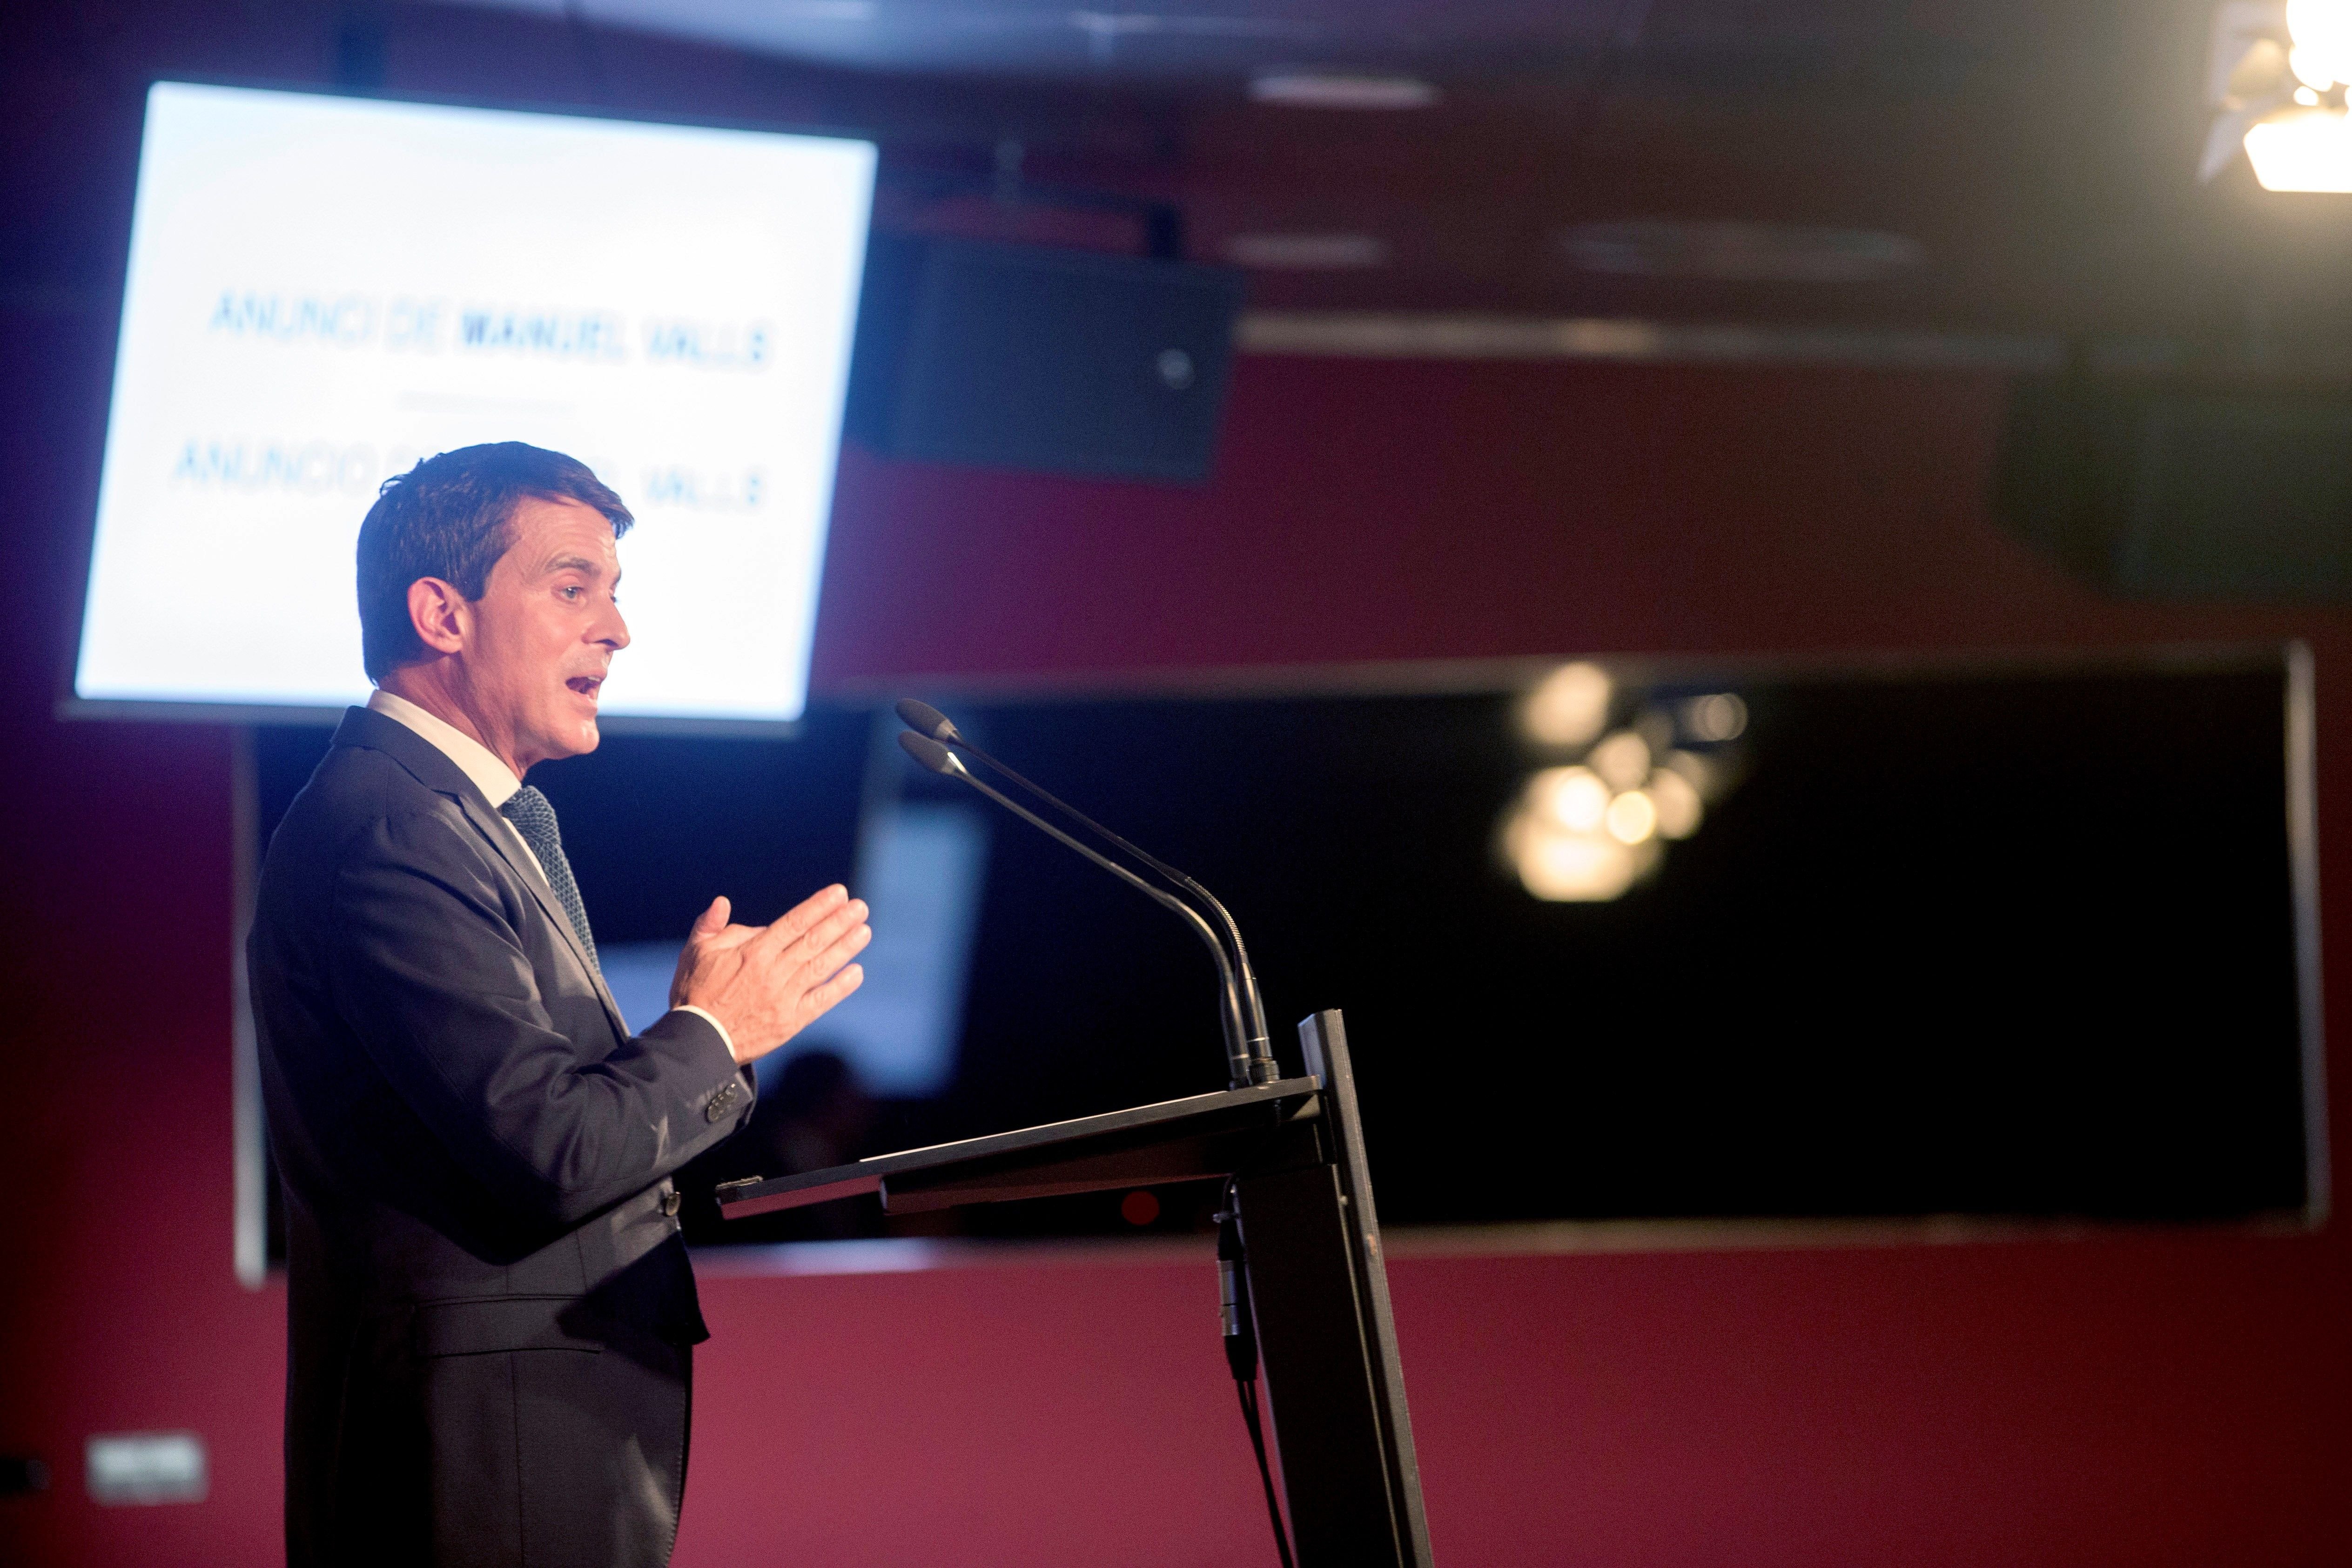 El món dels diners no es deixa veure a l'acte de presentació de Valls